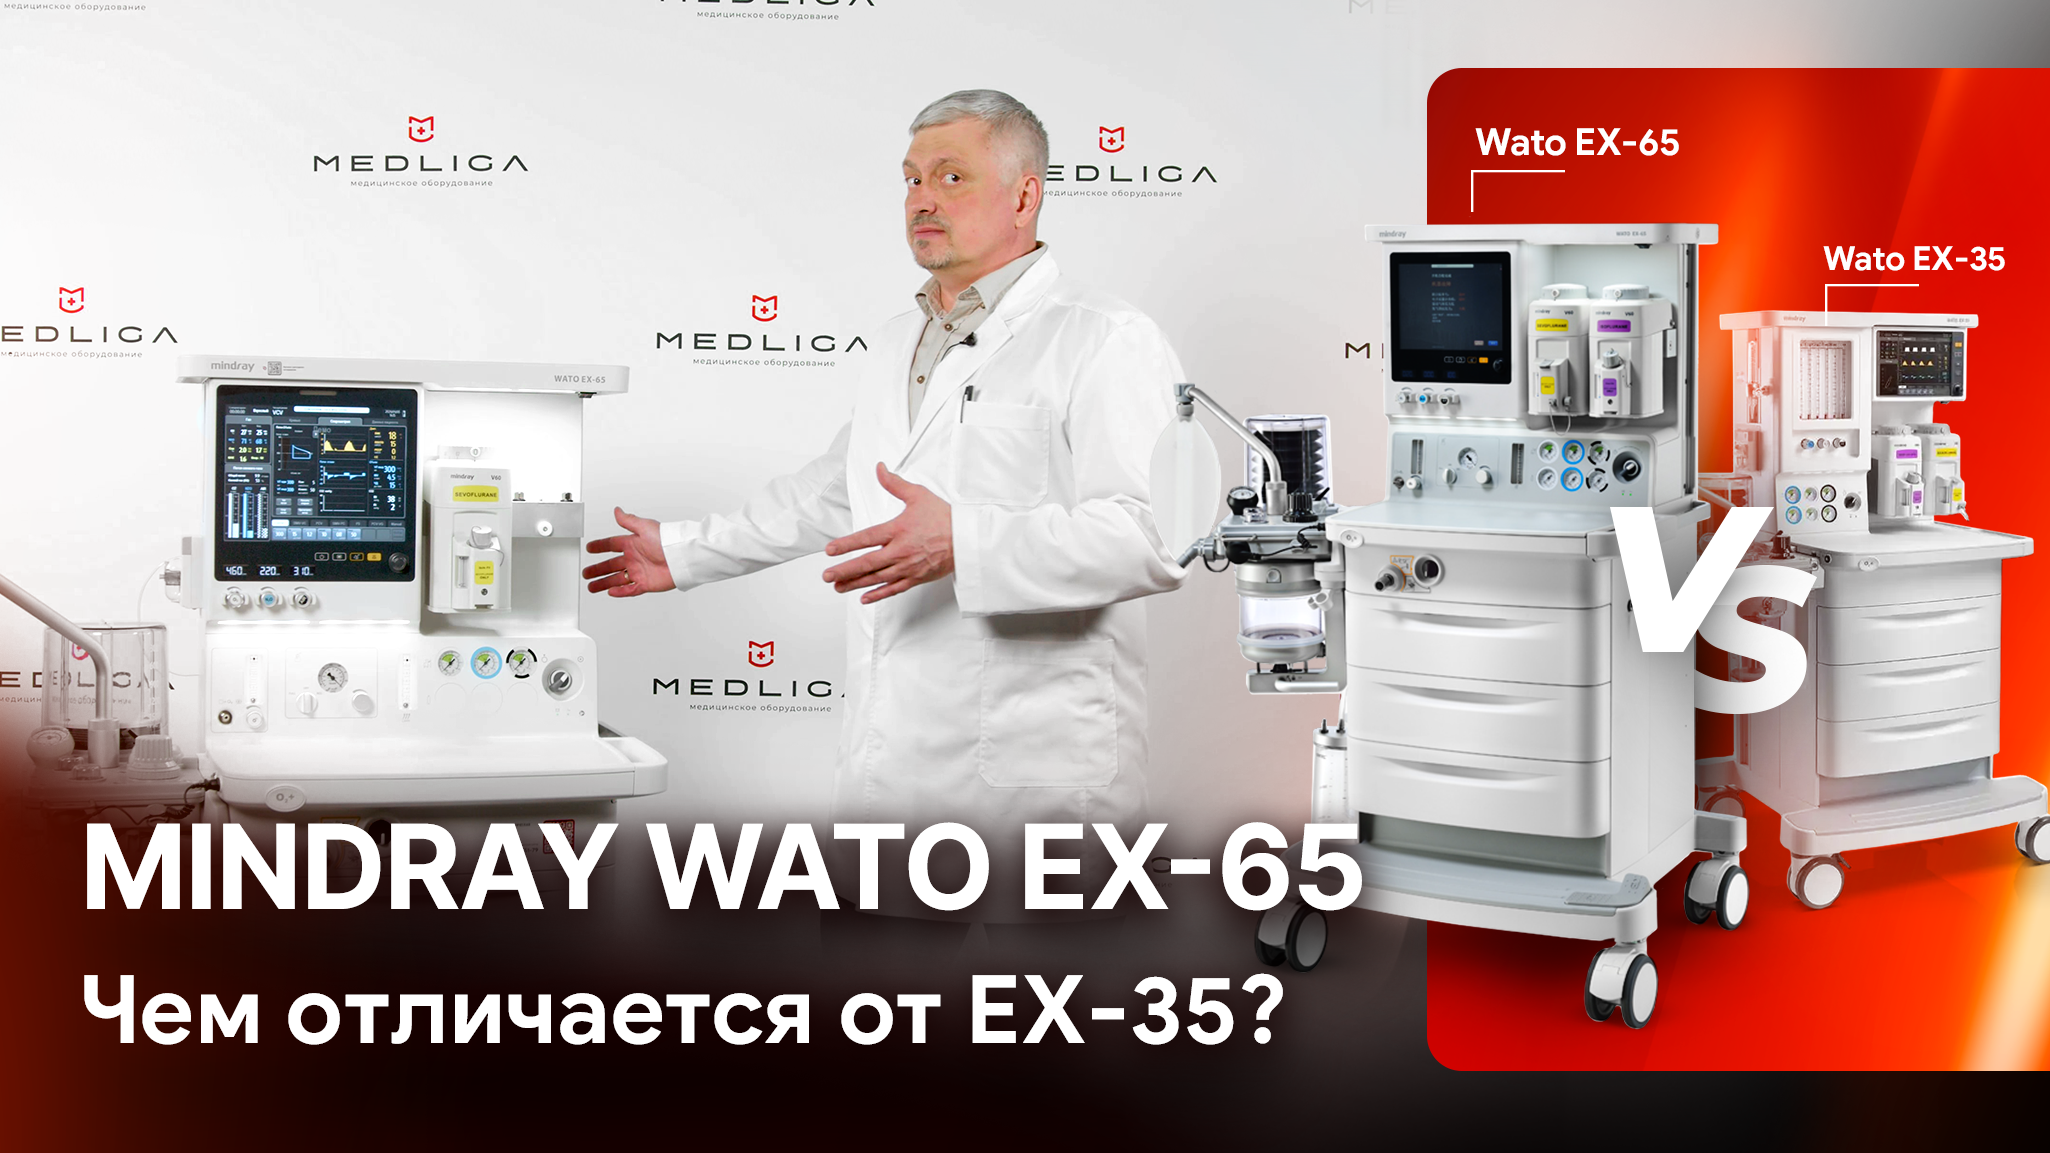 Mindray Wato EX-65. Обзор наркозного аппарата и сравнение с Wato EX-35